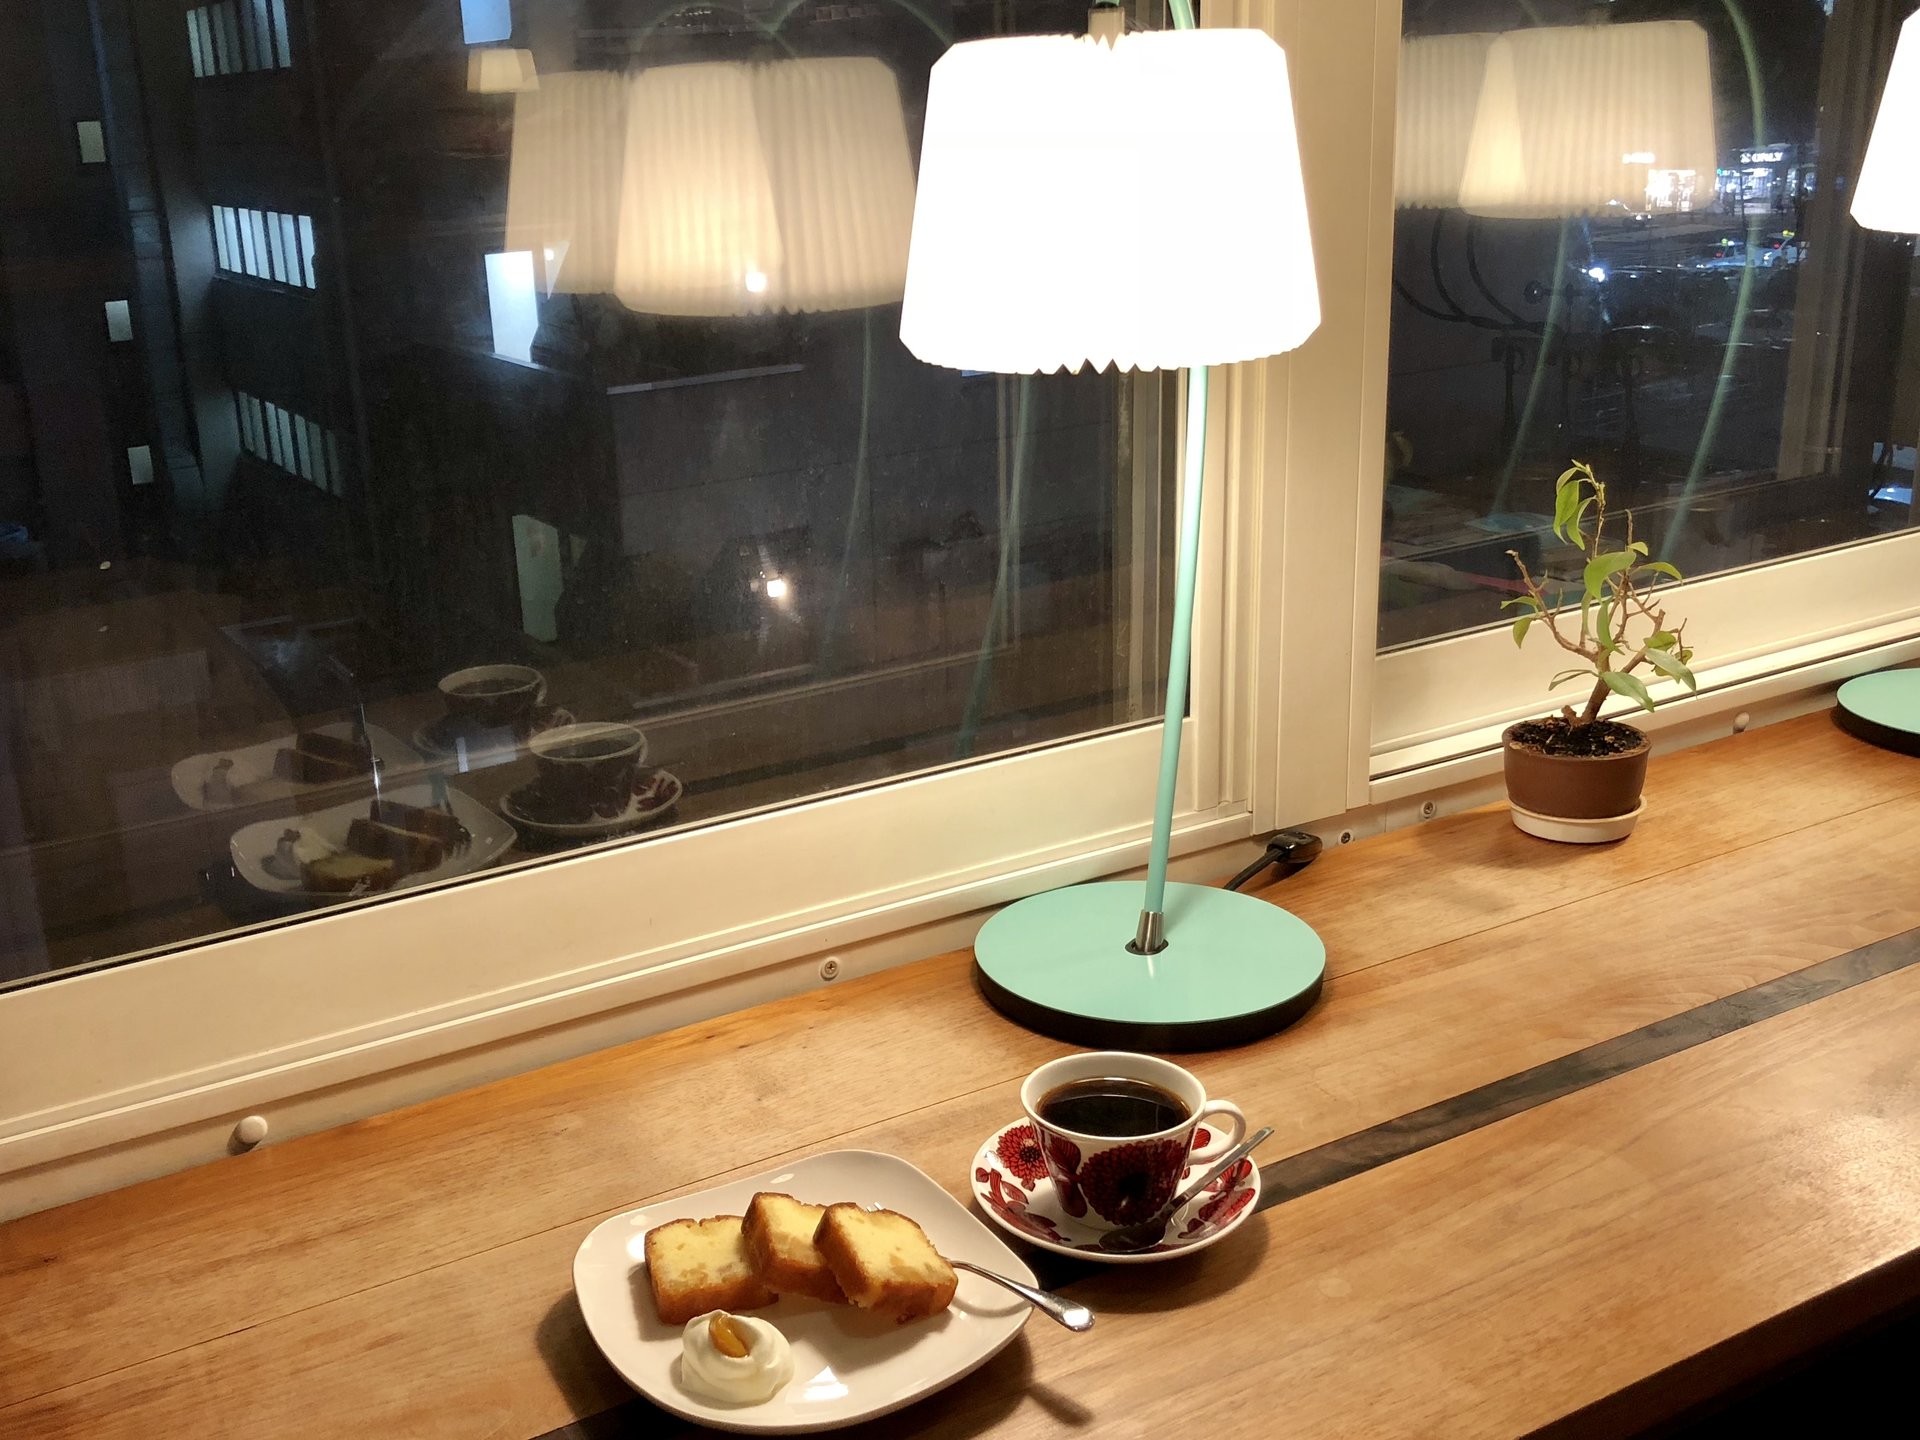 【札幌の街中にある隠れ家カフェ】心の落ち着くオシャレ空間にハマってしまう「ハリネズミ珈琲店」